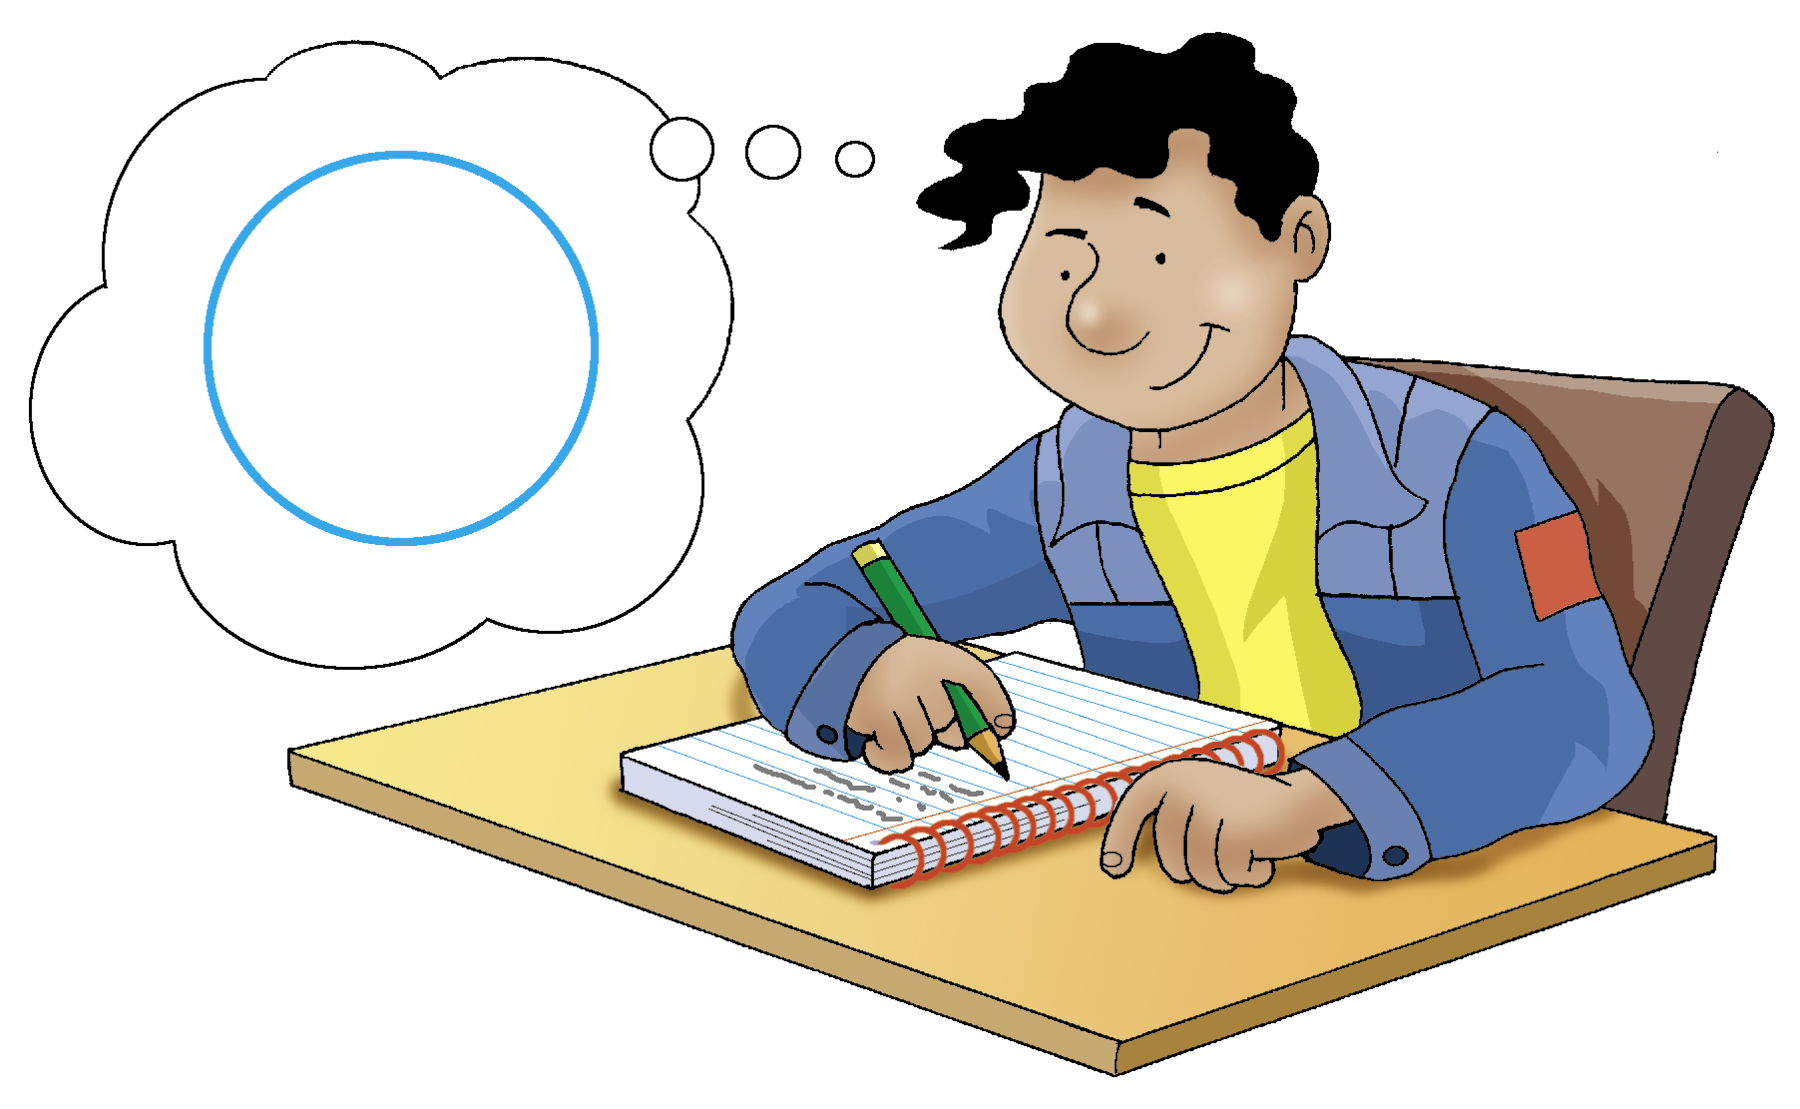 Ilustração. Homem de cabelo preto, camiseta amarela e casaco azul. Ele pensa em uma circunferência azul e está sentado de frente para uma mesa escrevendo no caderno.